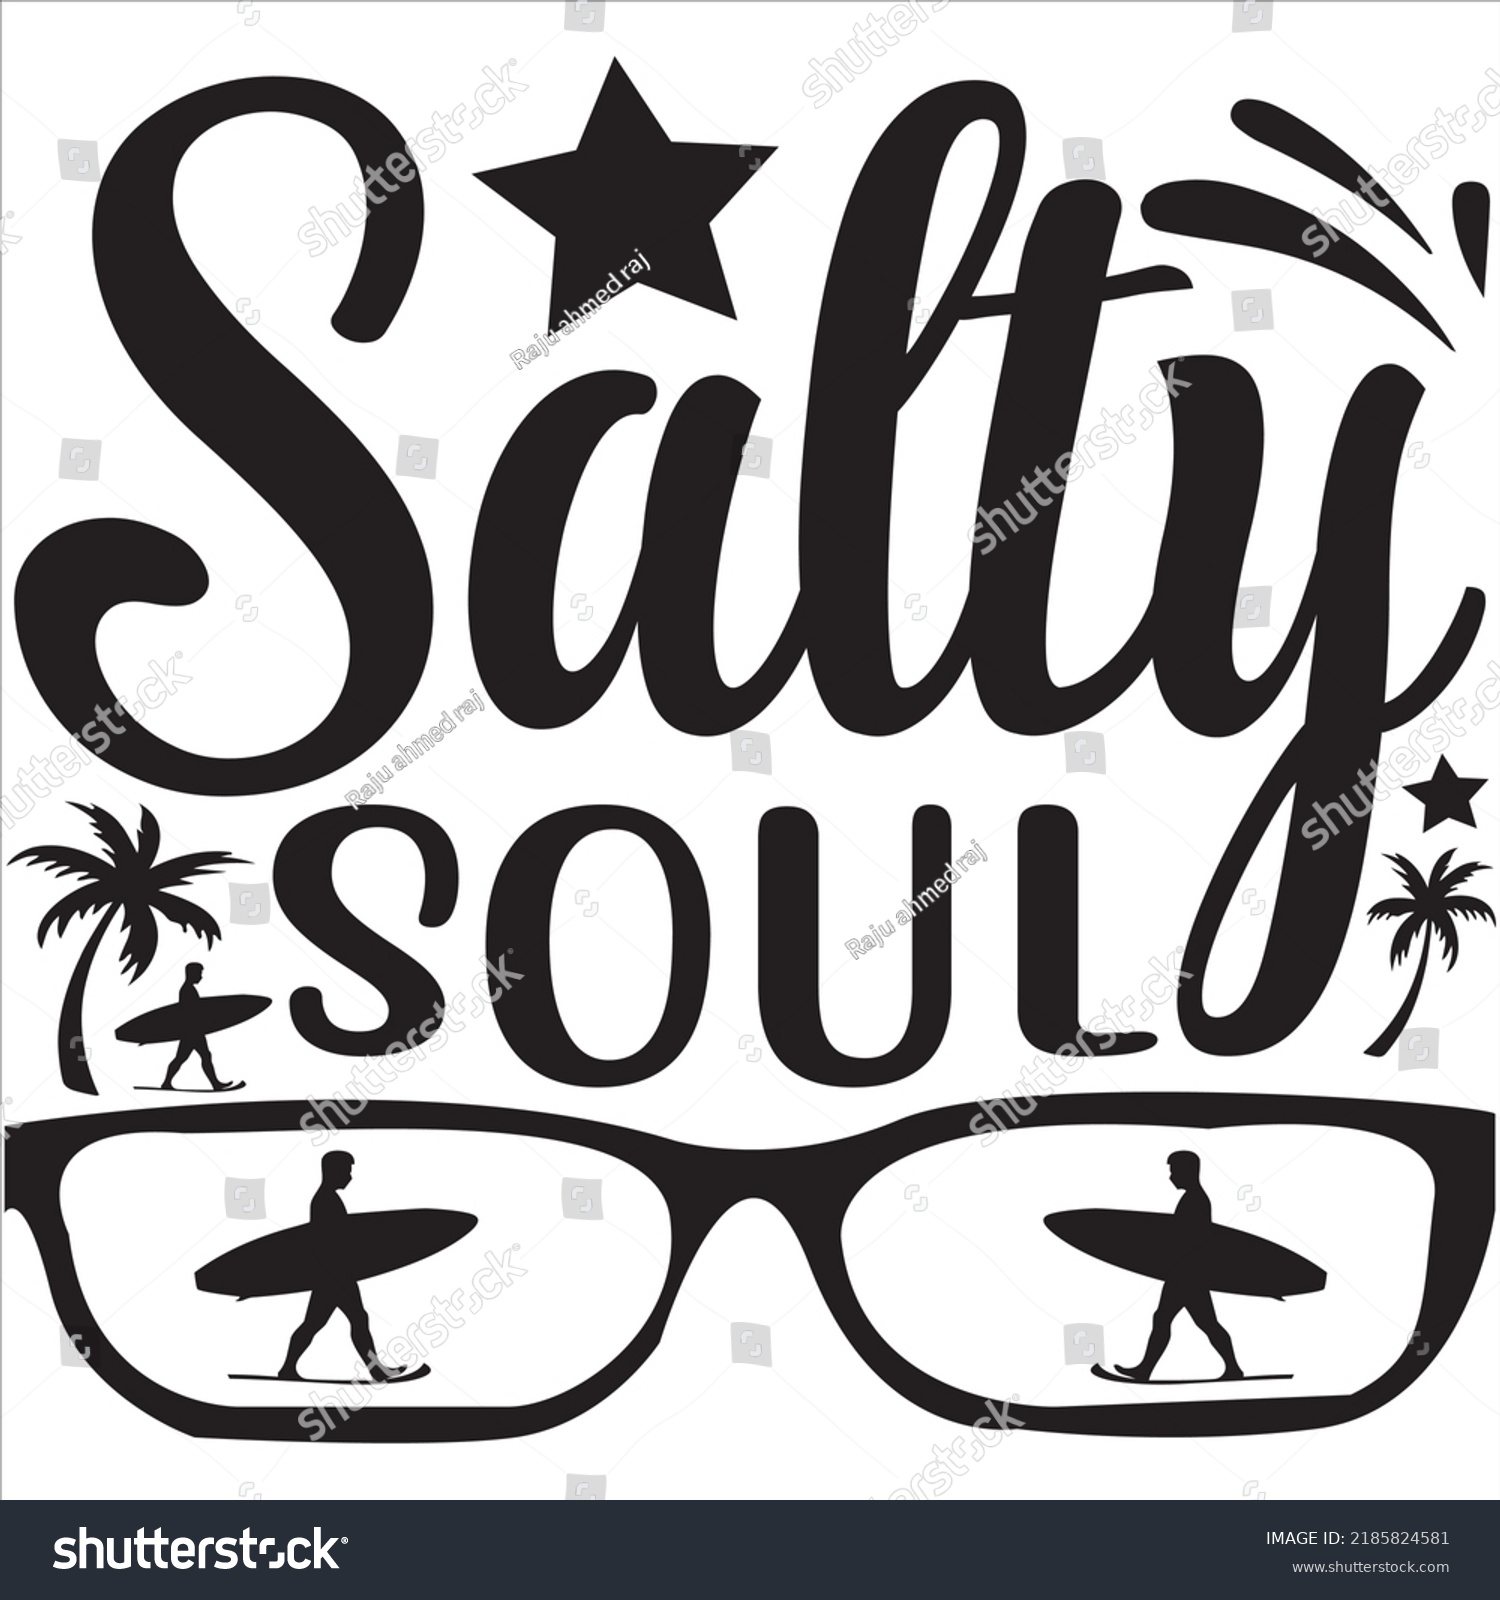 SVG of Salty soul, Svg t-shirt design and vector file. svg